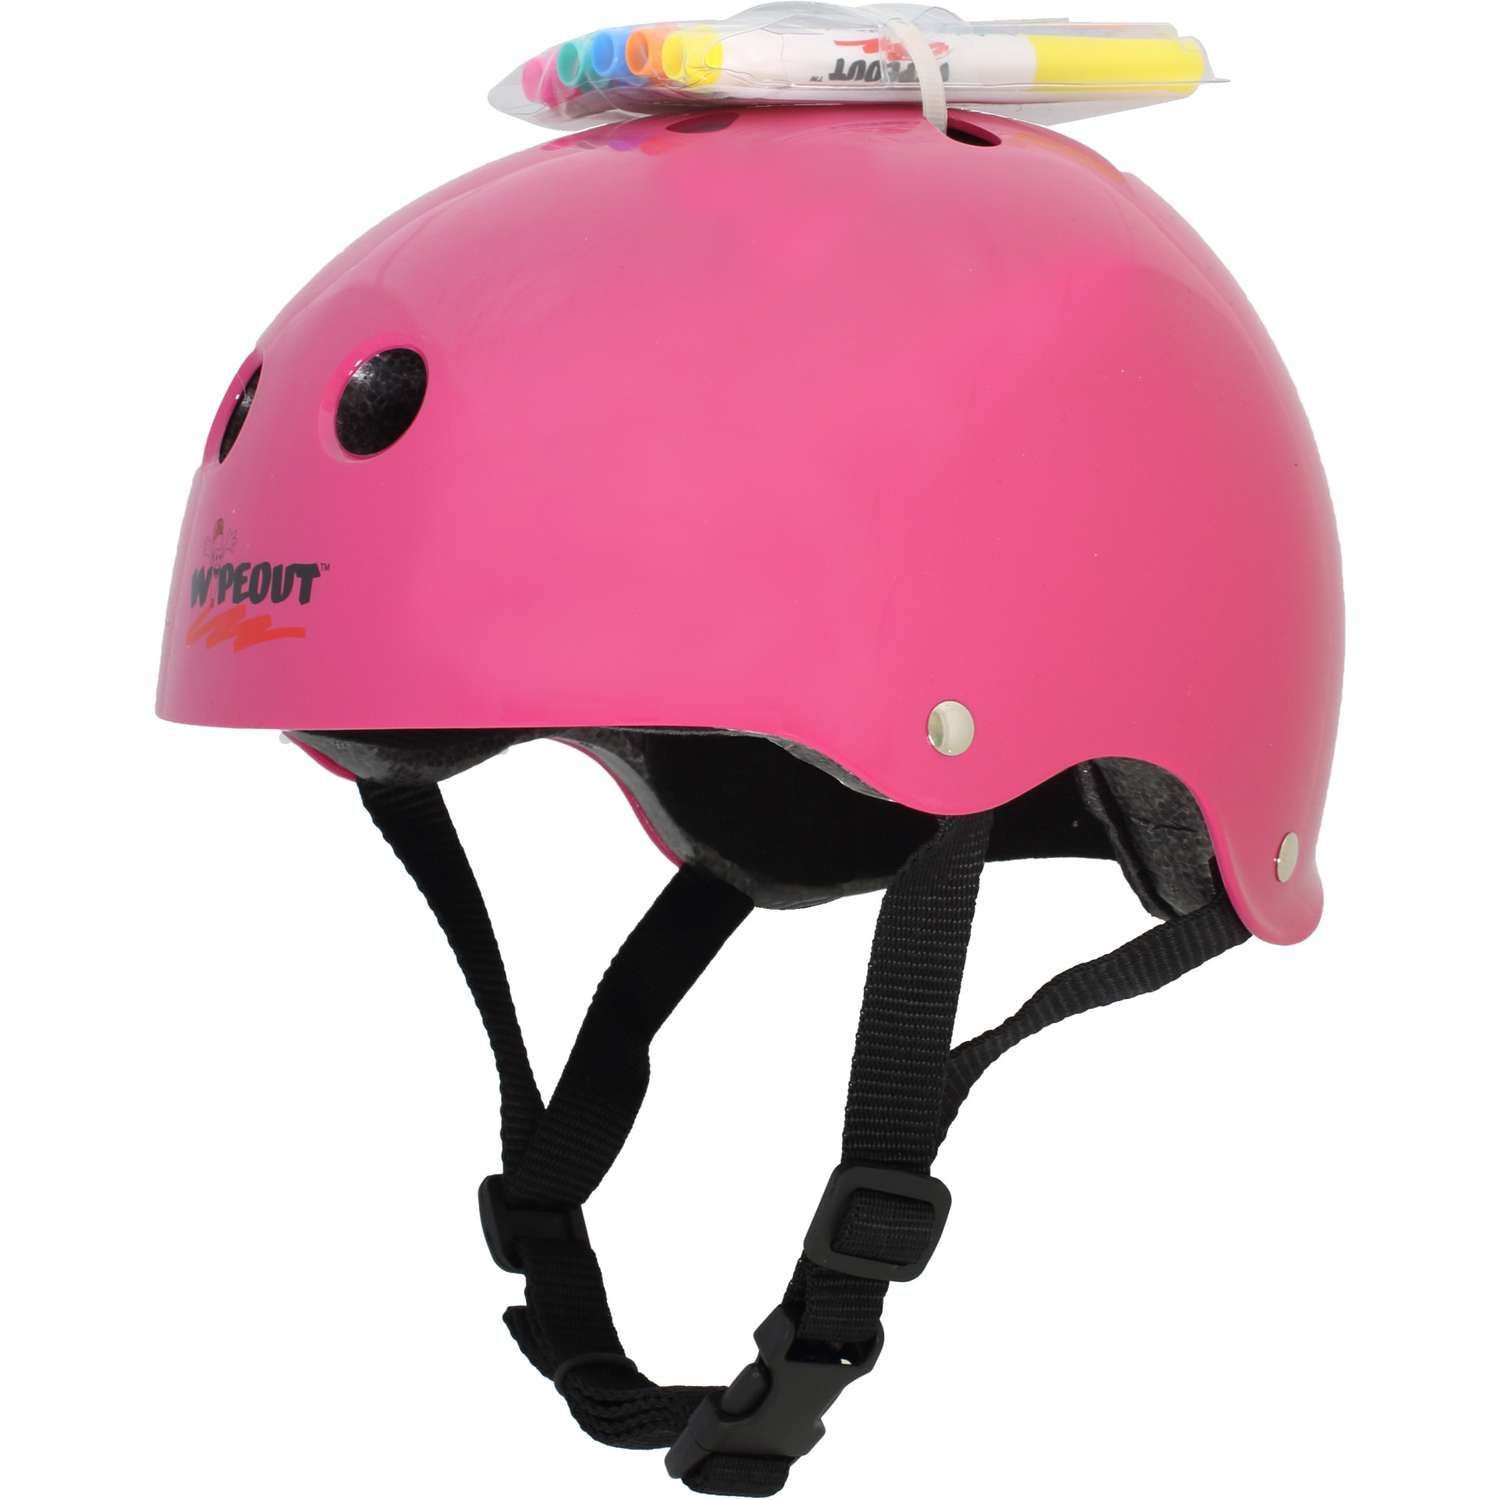 Шлем защитный спортивный WIPEOUT Neon Pink (розовый) с фломастерами и трафаретами / размер M 5+ / обхват головы 49-52 см. - фото 1